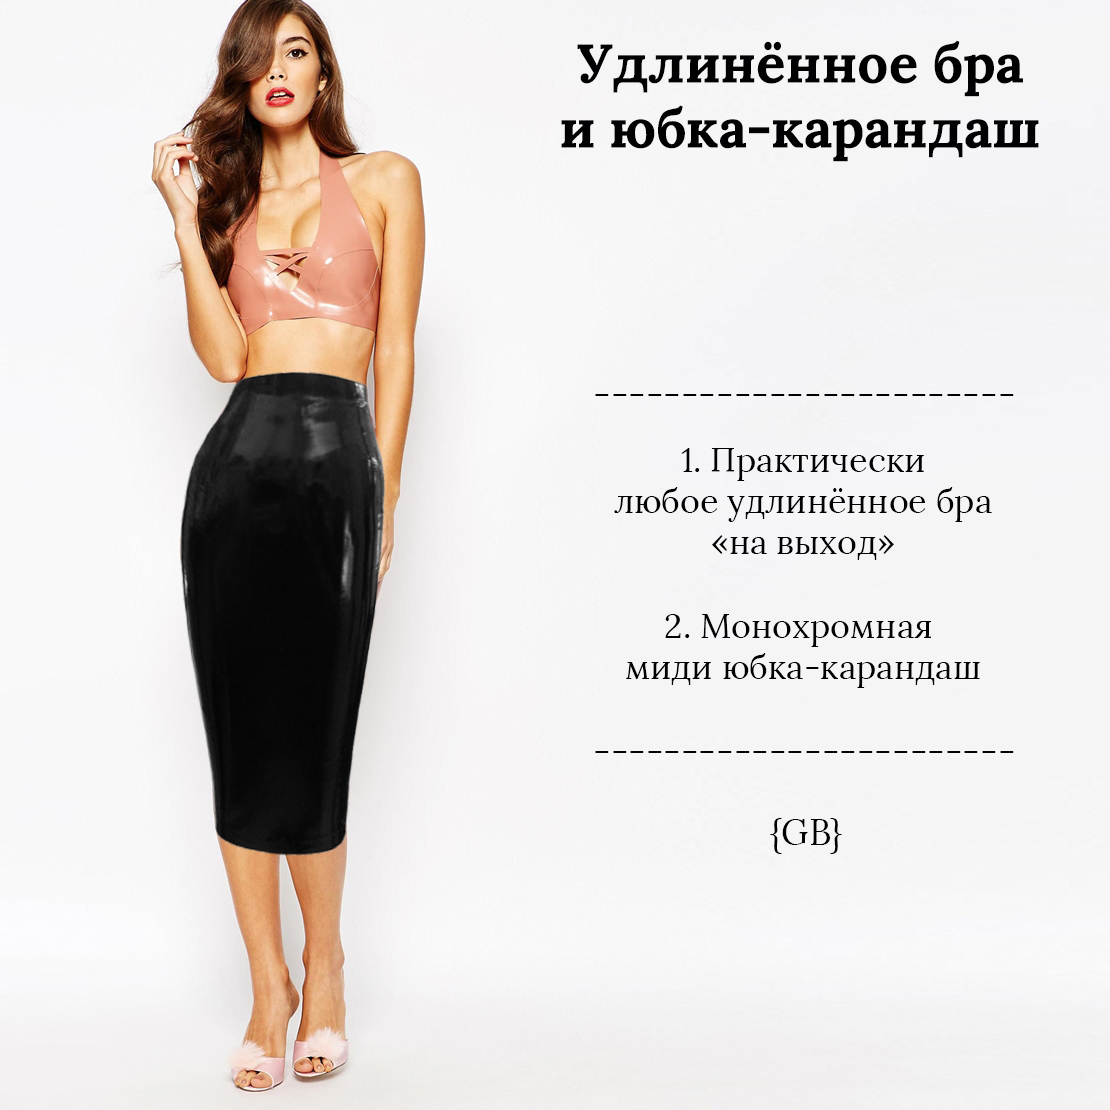 Удлинённое бра в качестве верхней одежды Стиль GB Garterblog.ru